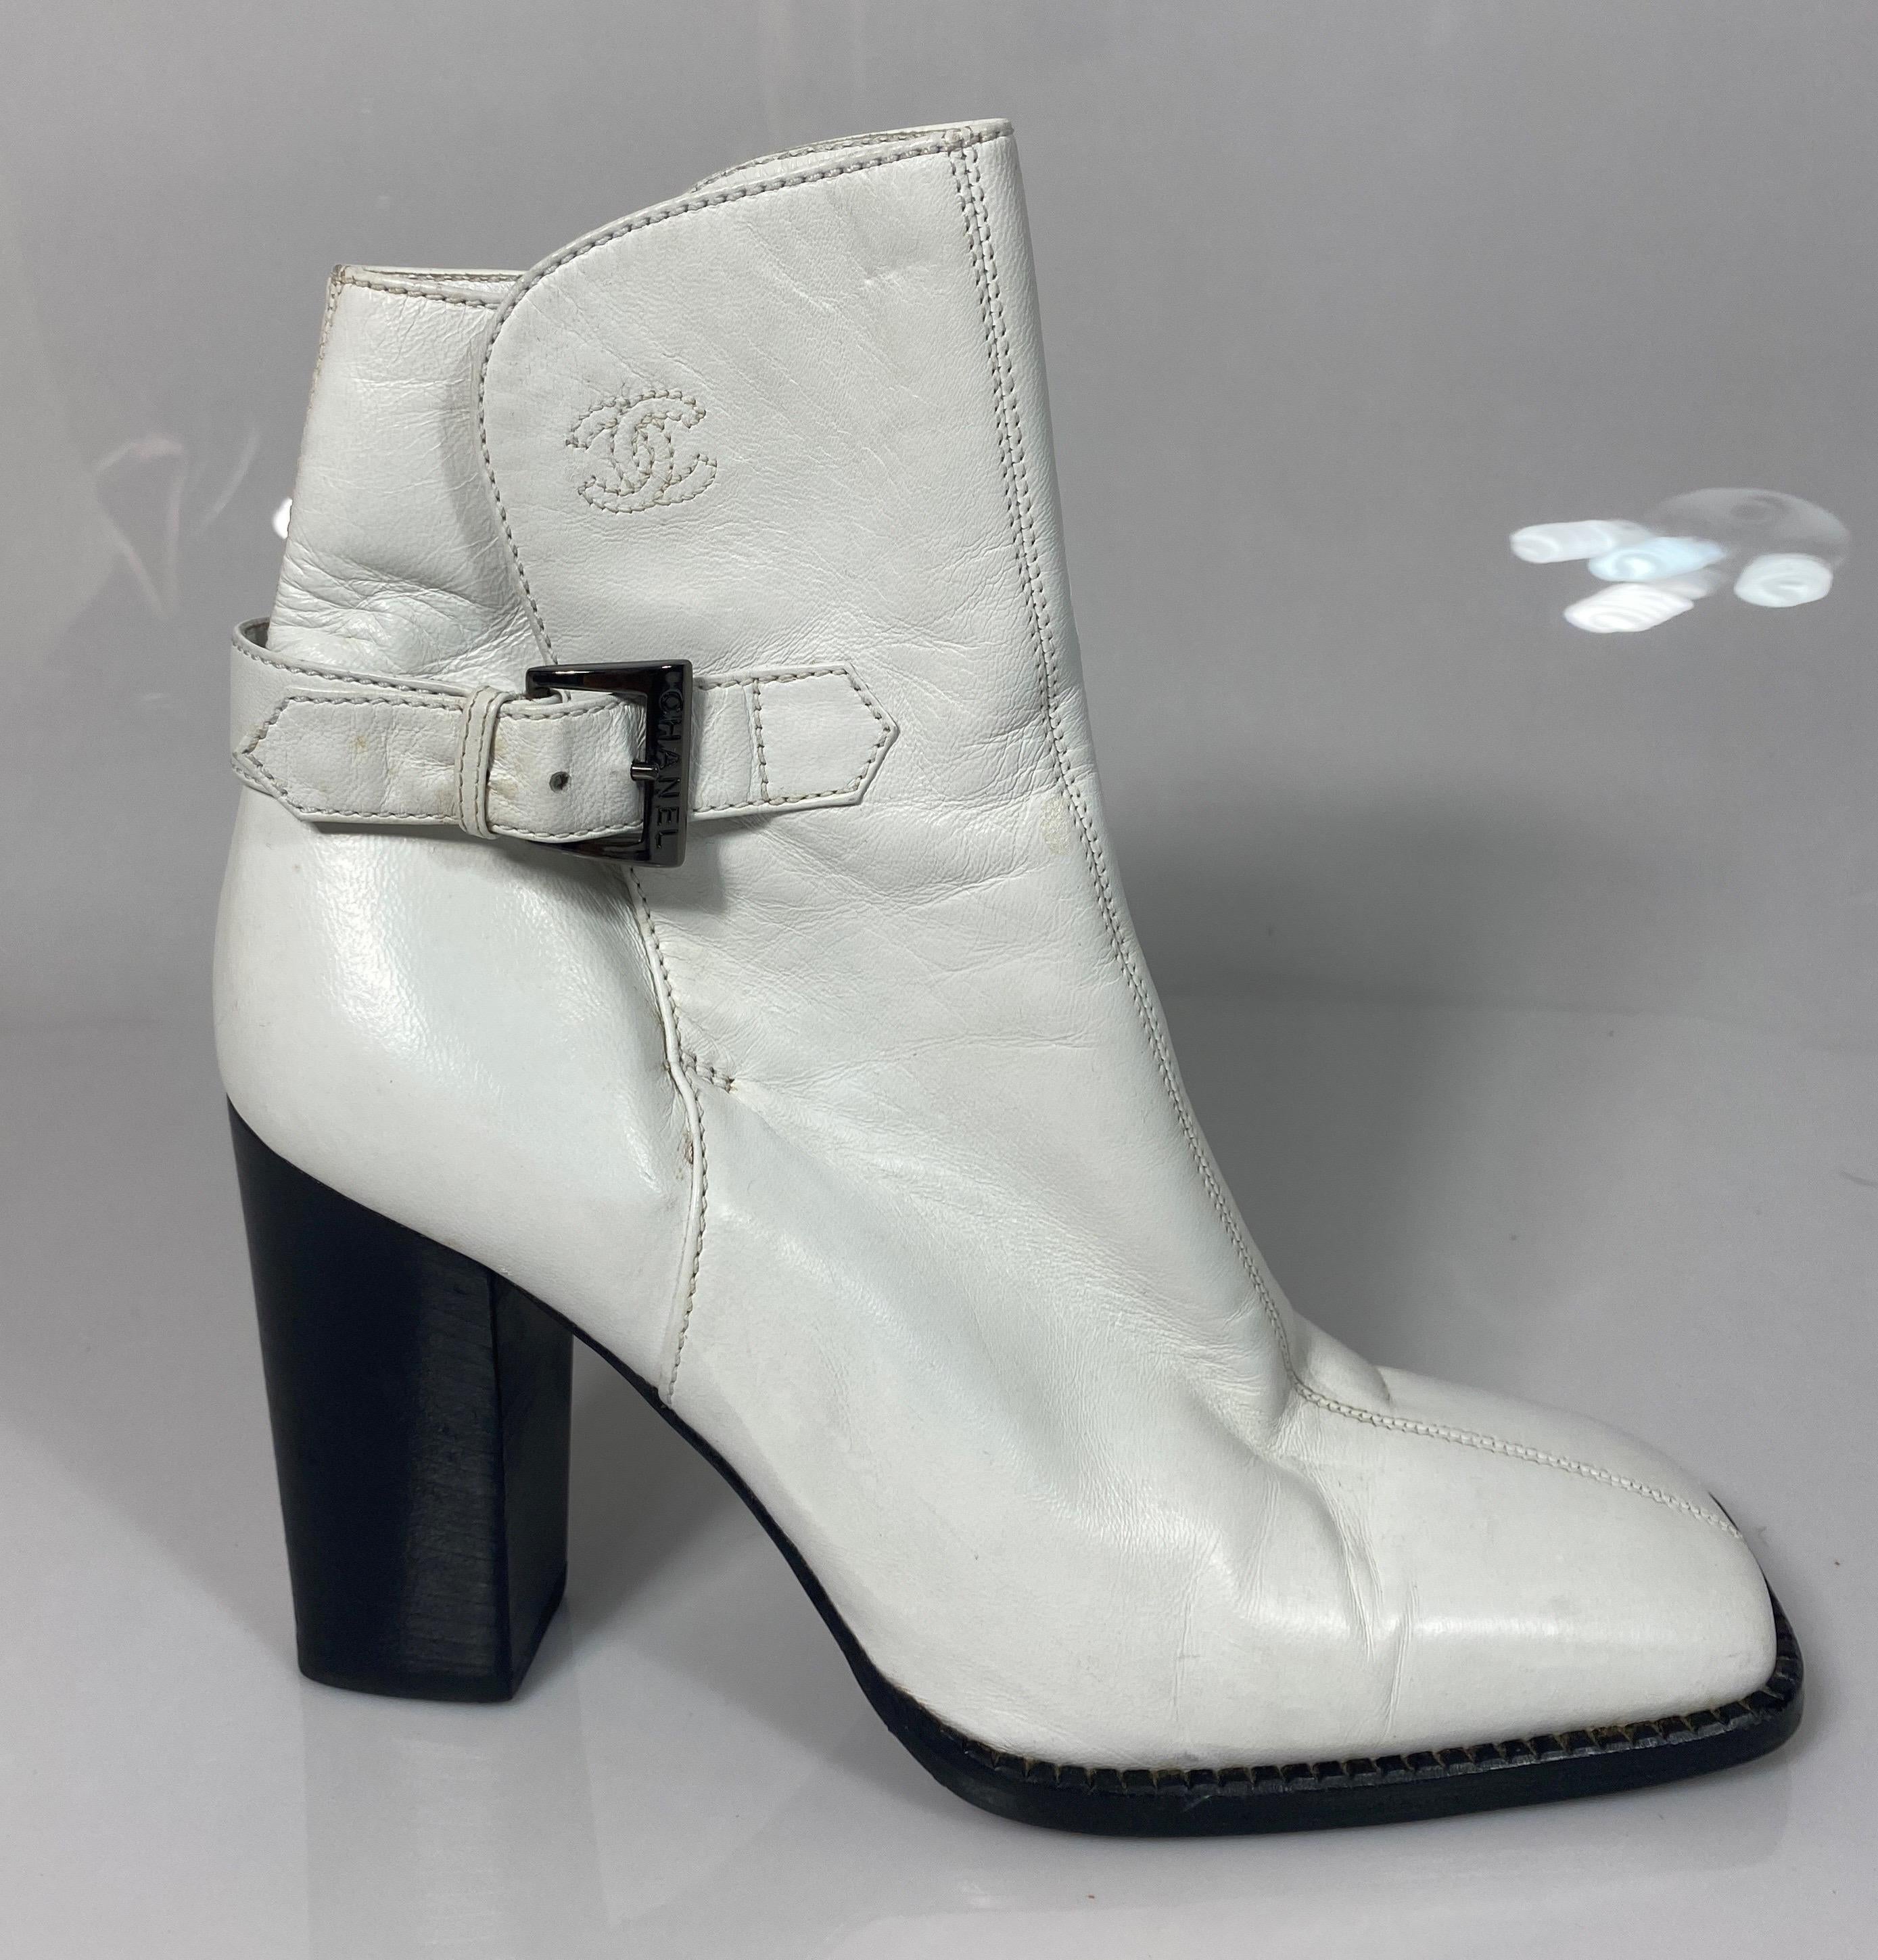 Chanel Weiß Leder Chunky Holz Stack Heel Short Boot -Größe 36.5. Diese seltene Chanel White Bootie ist wie unten beschrieben:
Quadratische Zehenbox
3,75